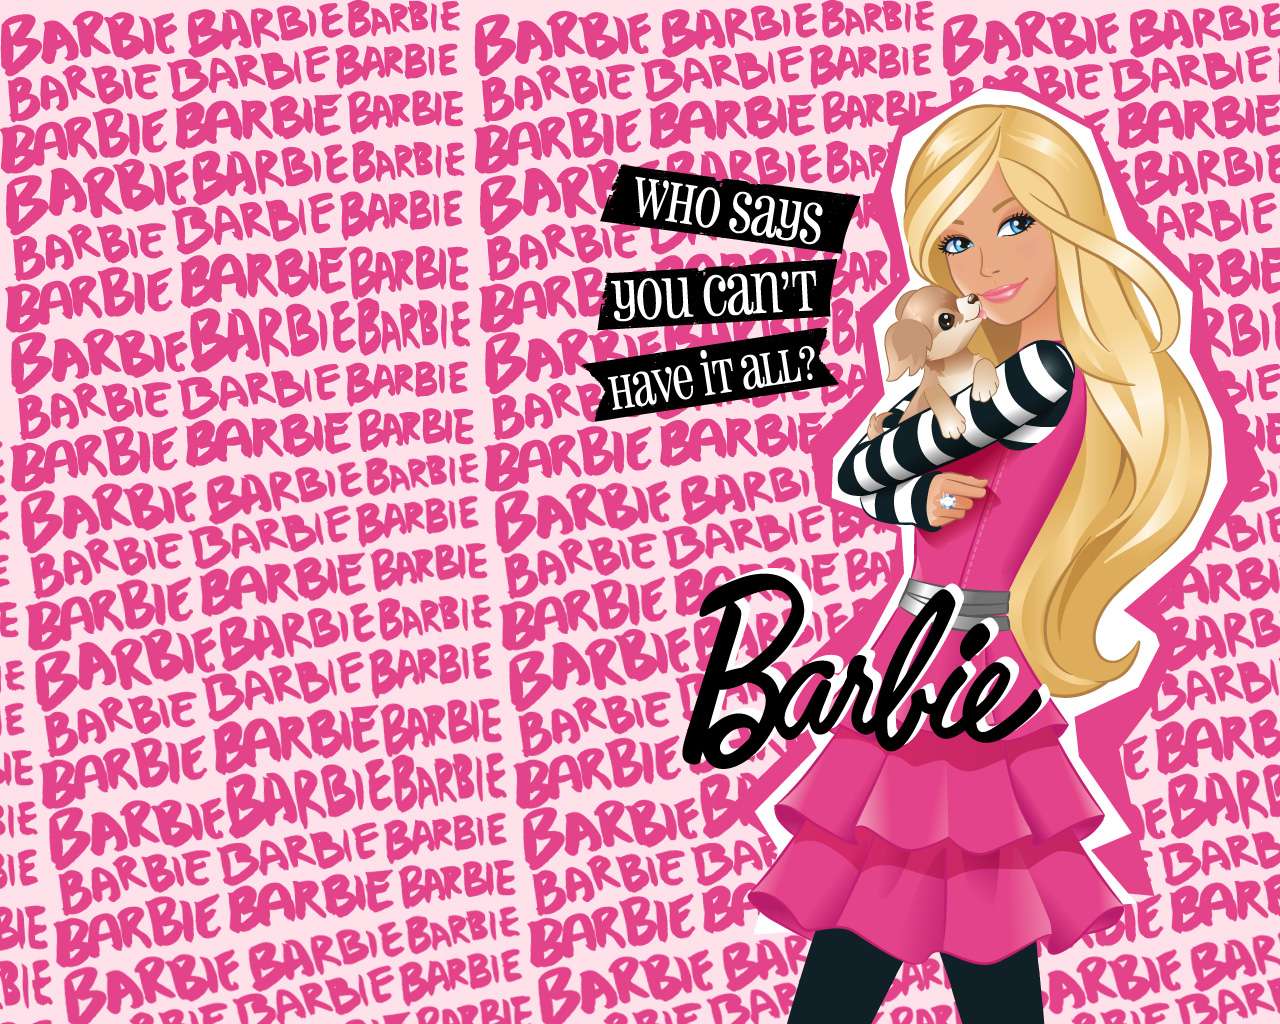 Barbie - Papel de Parede Barbie (31795211) - Fanpop puzzle online